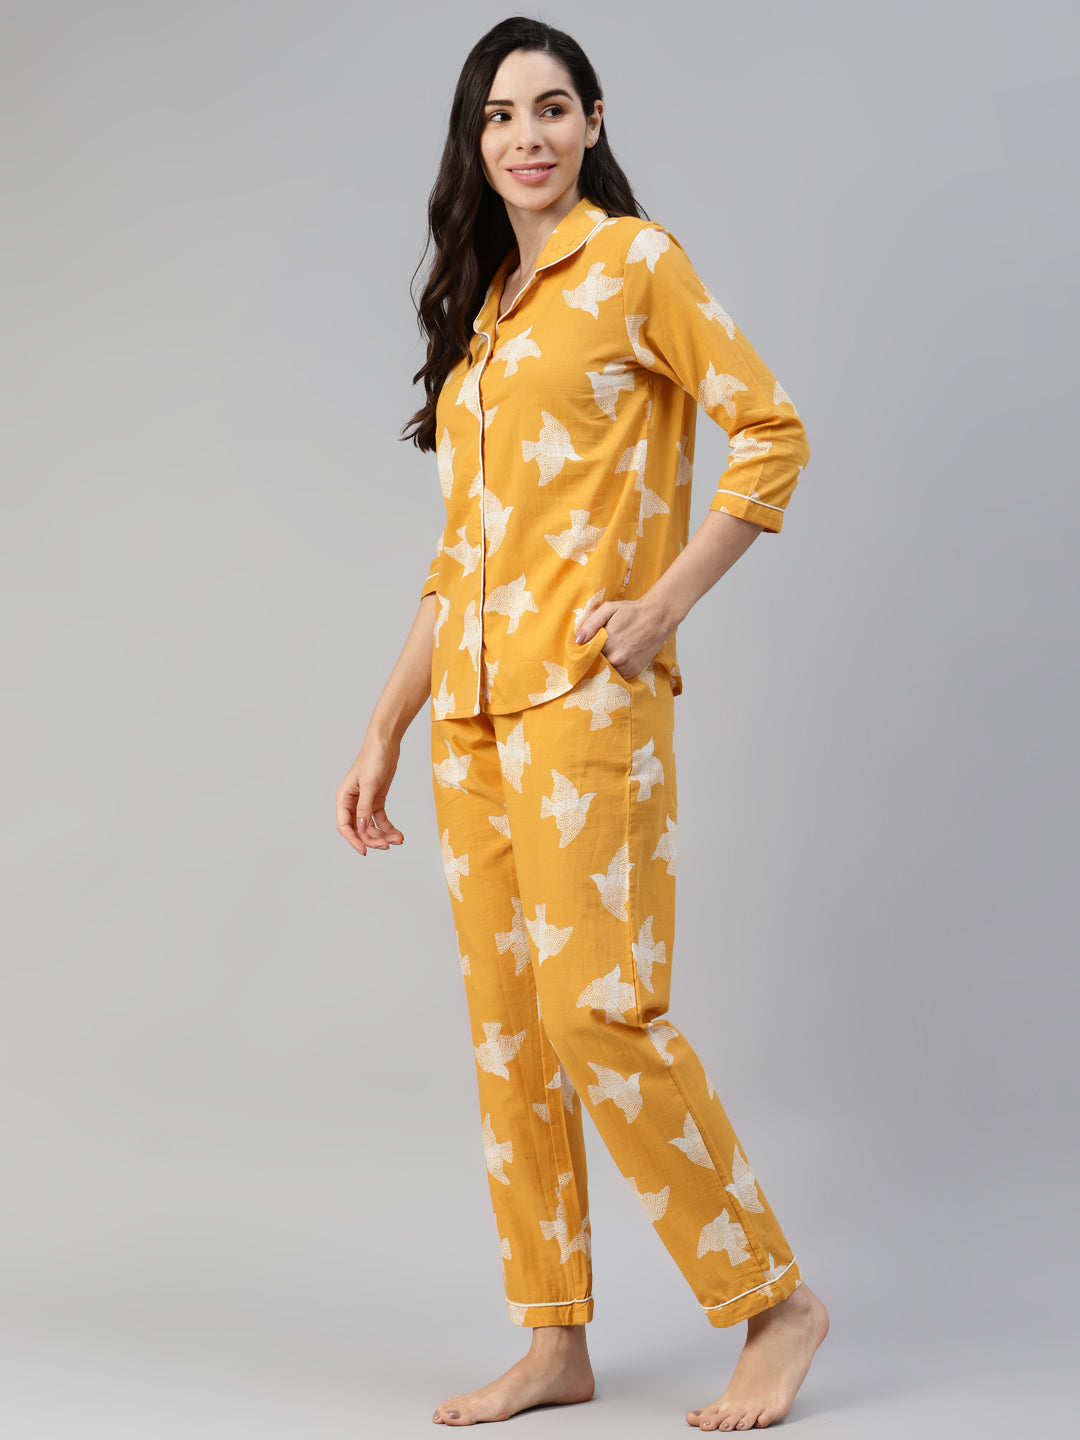 louisville womens pajamas